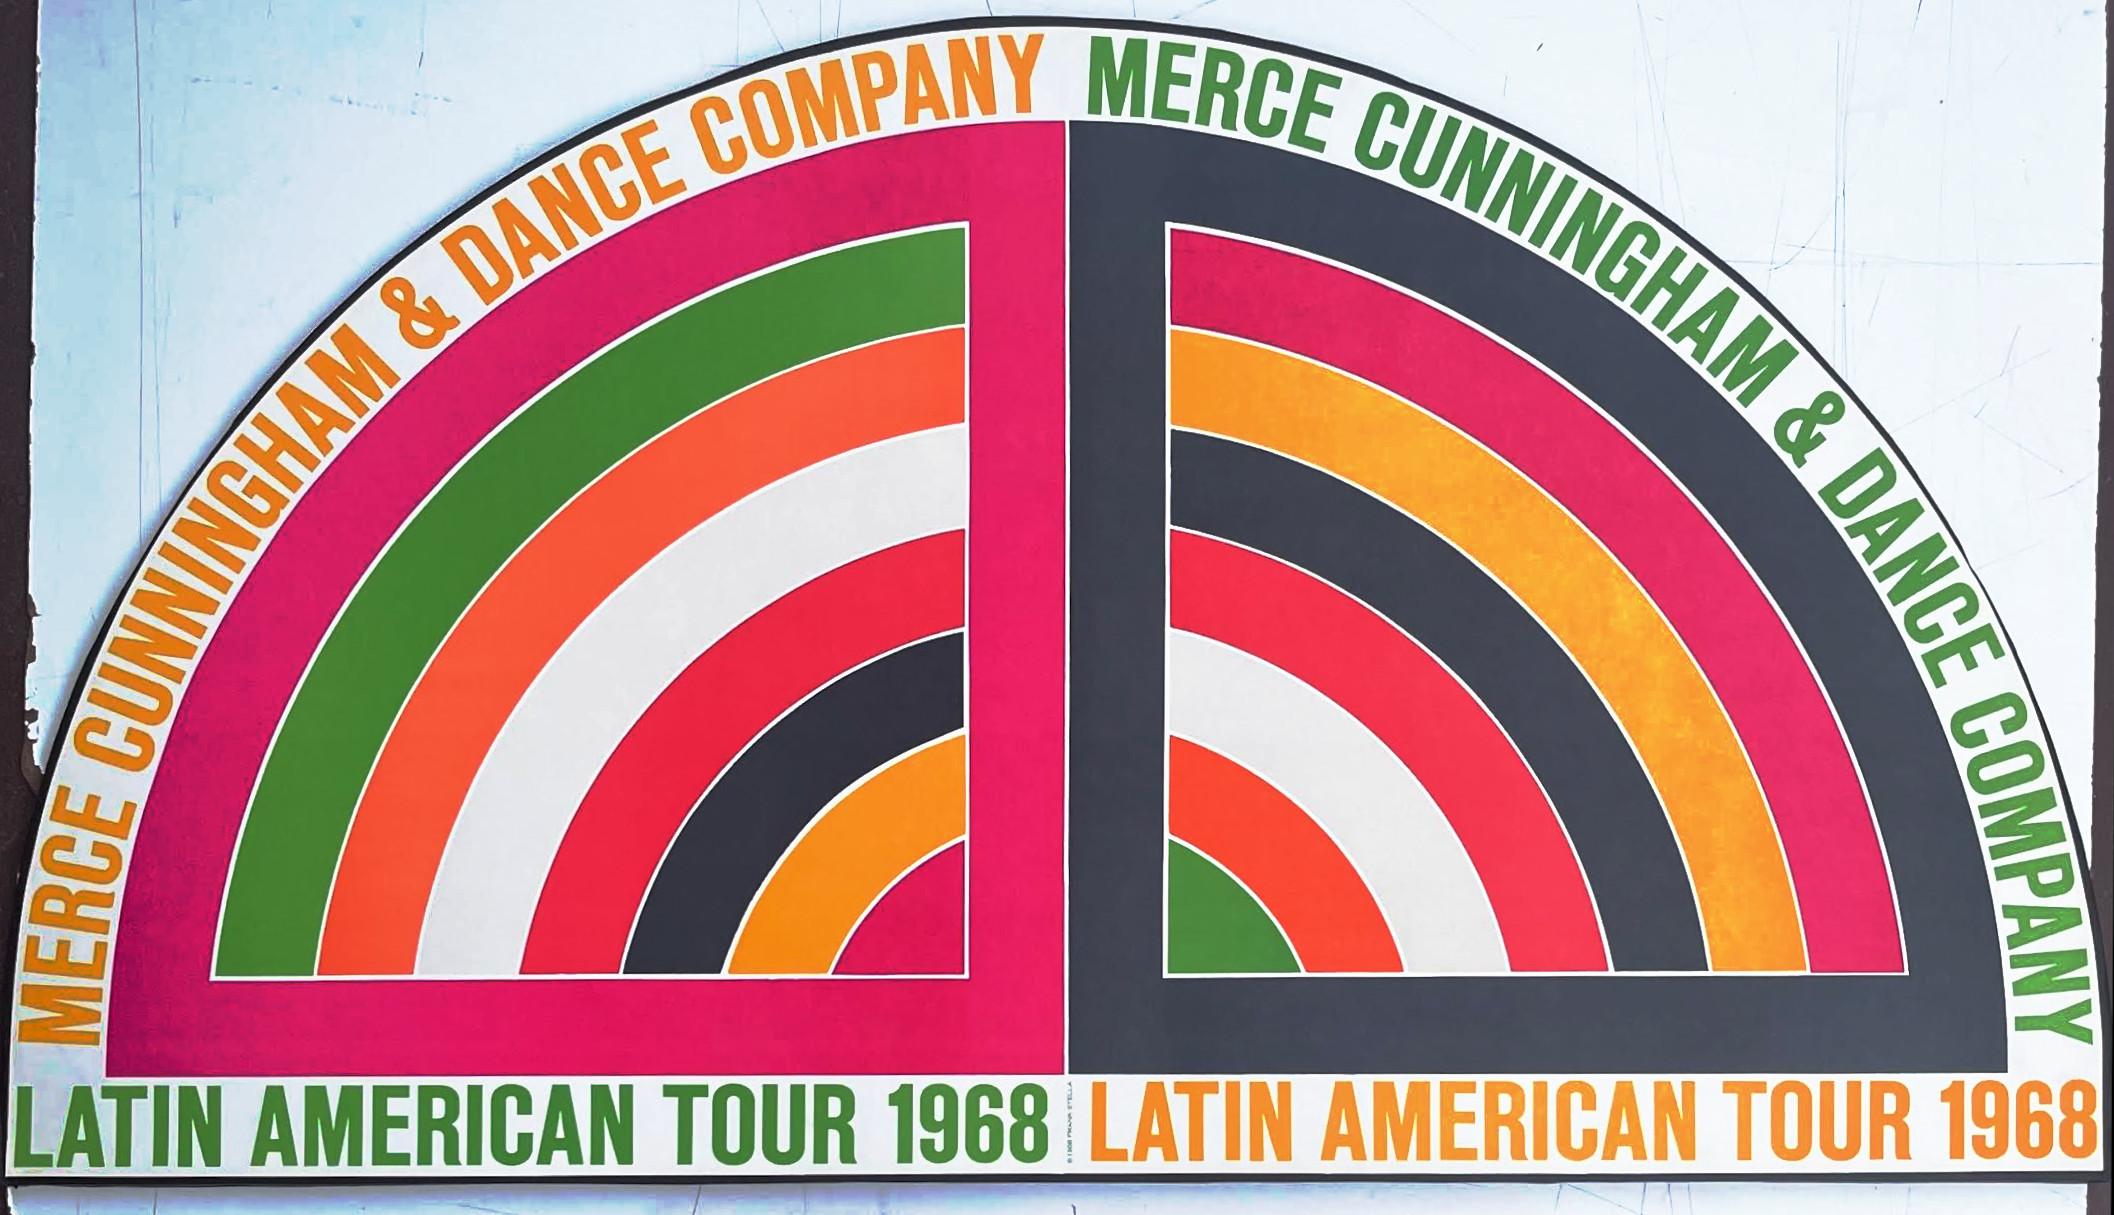 Merce Cunningham & Dance Company tournée en Amérique latine - Pop Art Print par Frank Stella